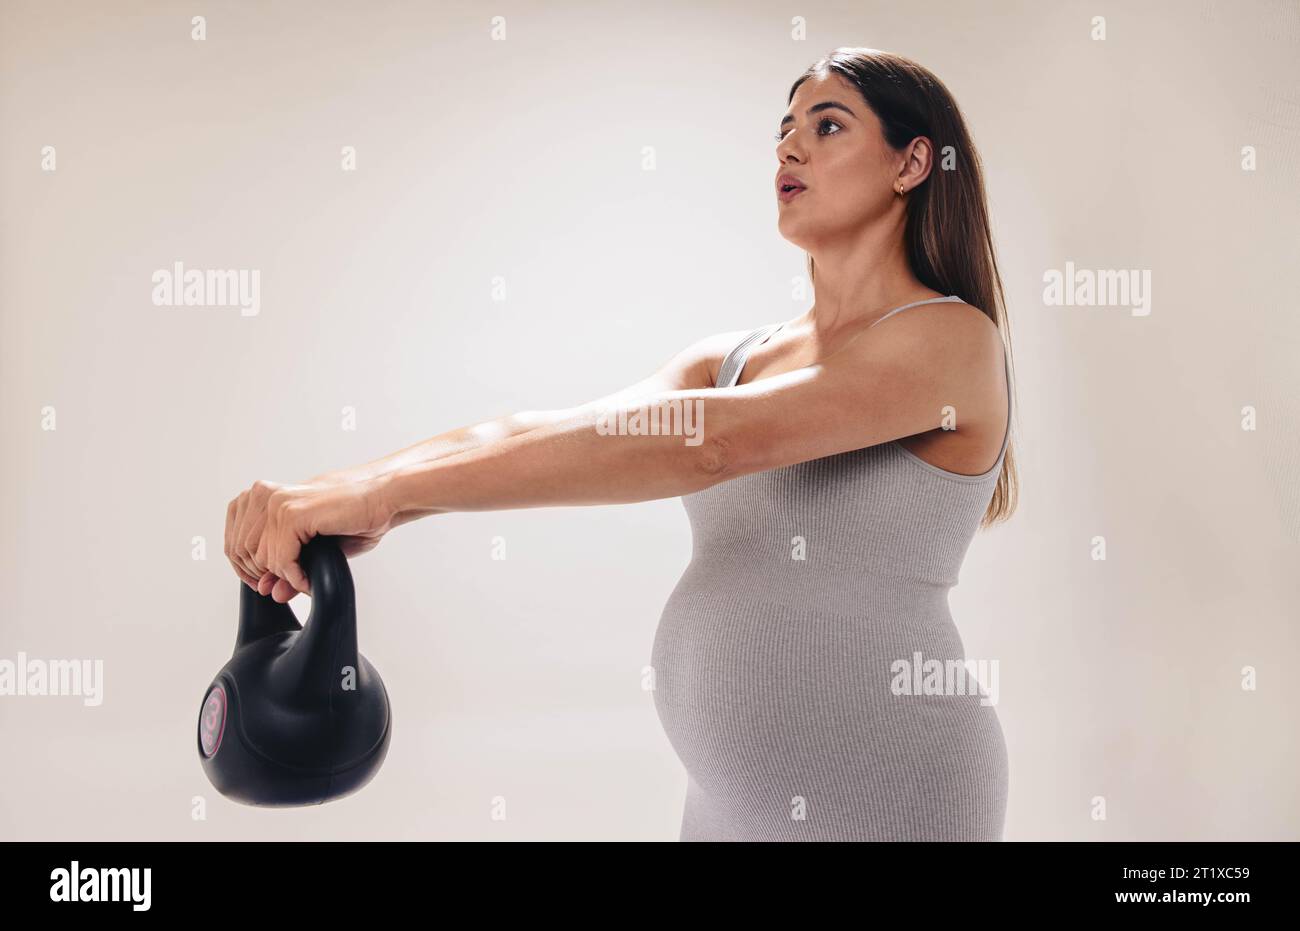 femme enceinte dans son troisième trimestre se concentre sur la forme physique et le bien-être. Elle soulève des poids, des étirements et des exercices pour un corps sain pendant la grossesse Banque D'Images